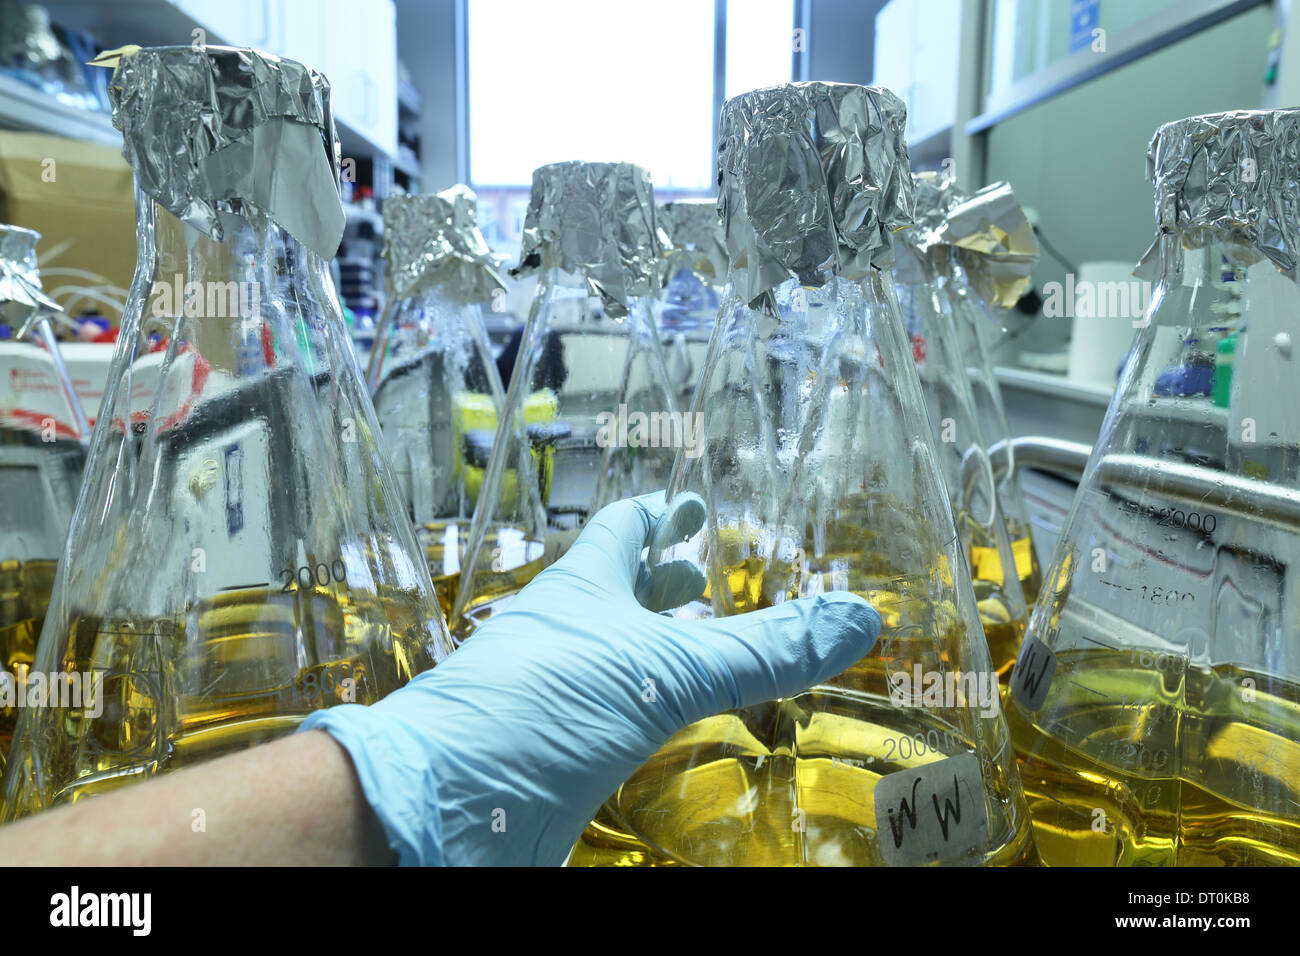 Moyens flacons stériles biologique dans un laboratoire de recherche Banque D'Images